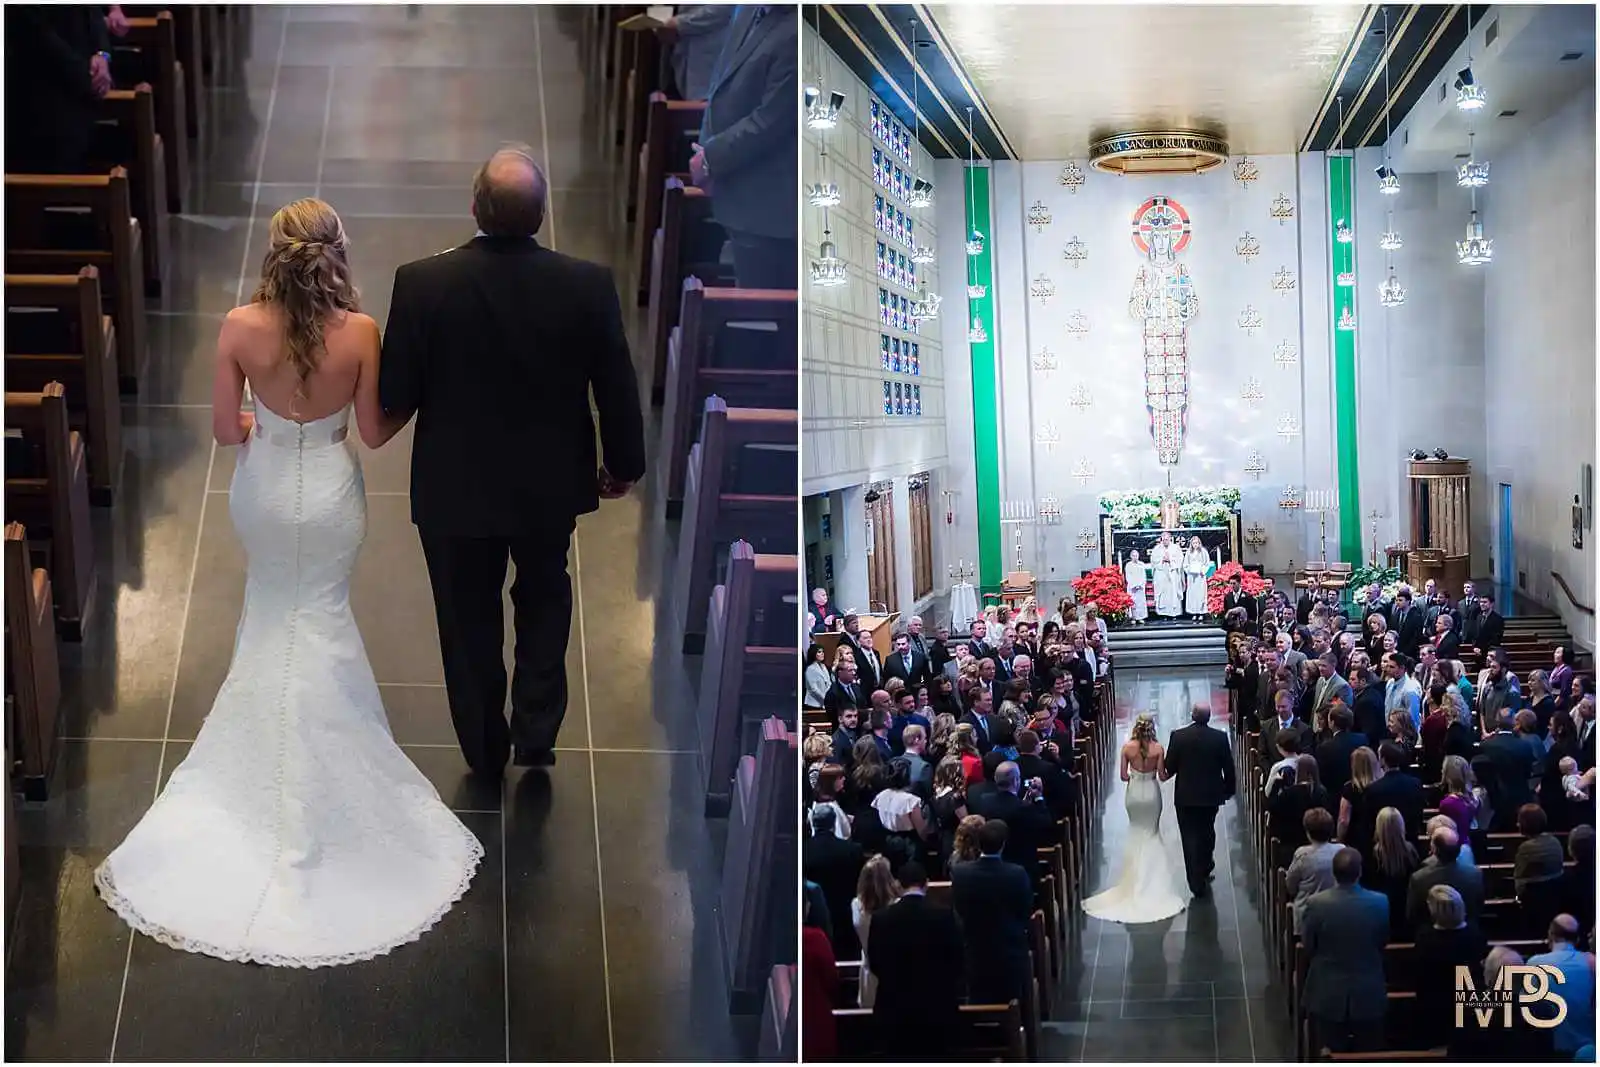 Elegant bride and father walking to altar in Cincinnati church wedding.